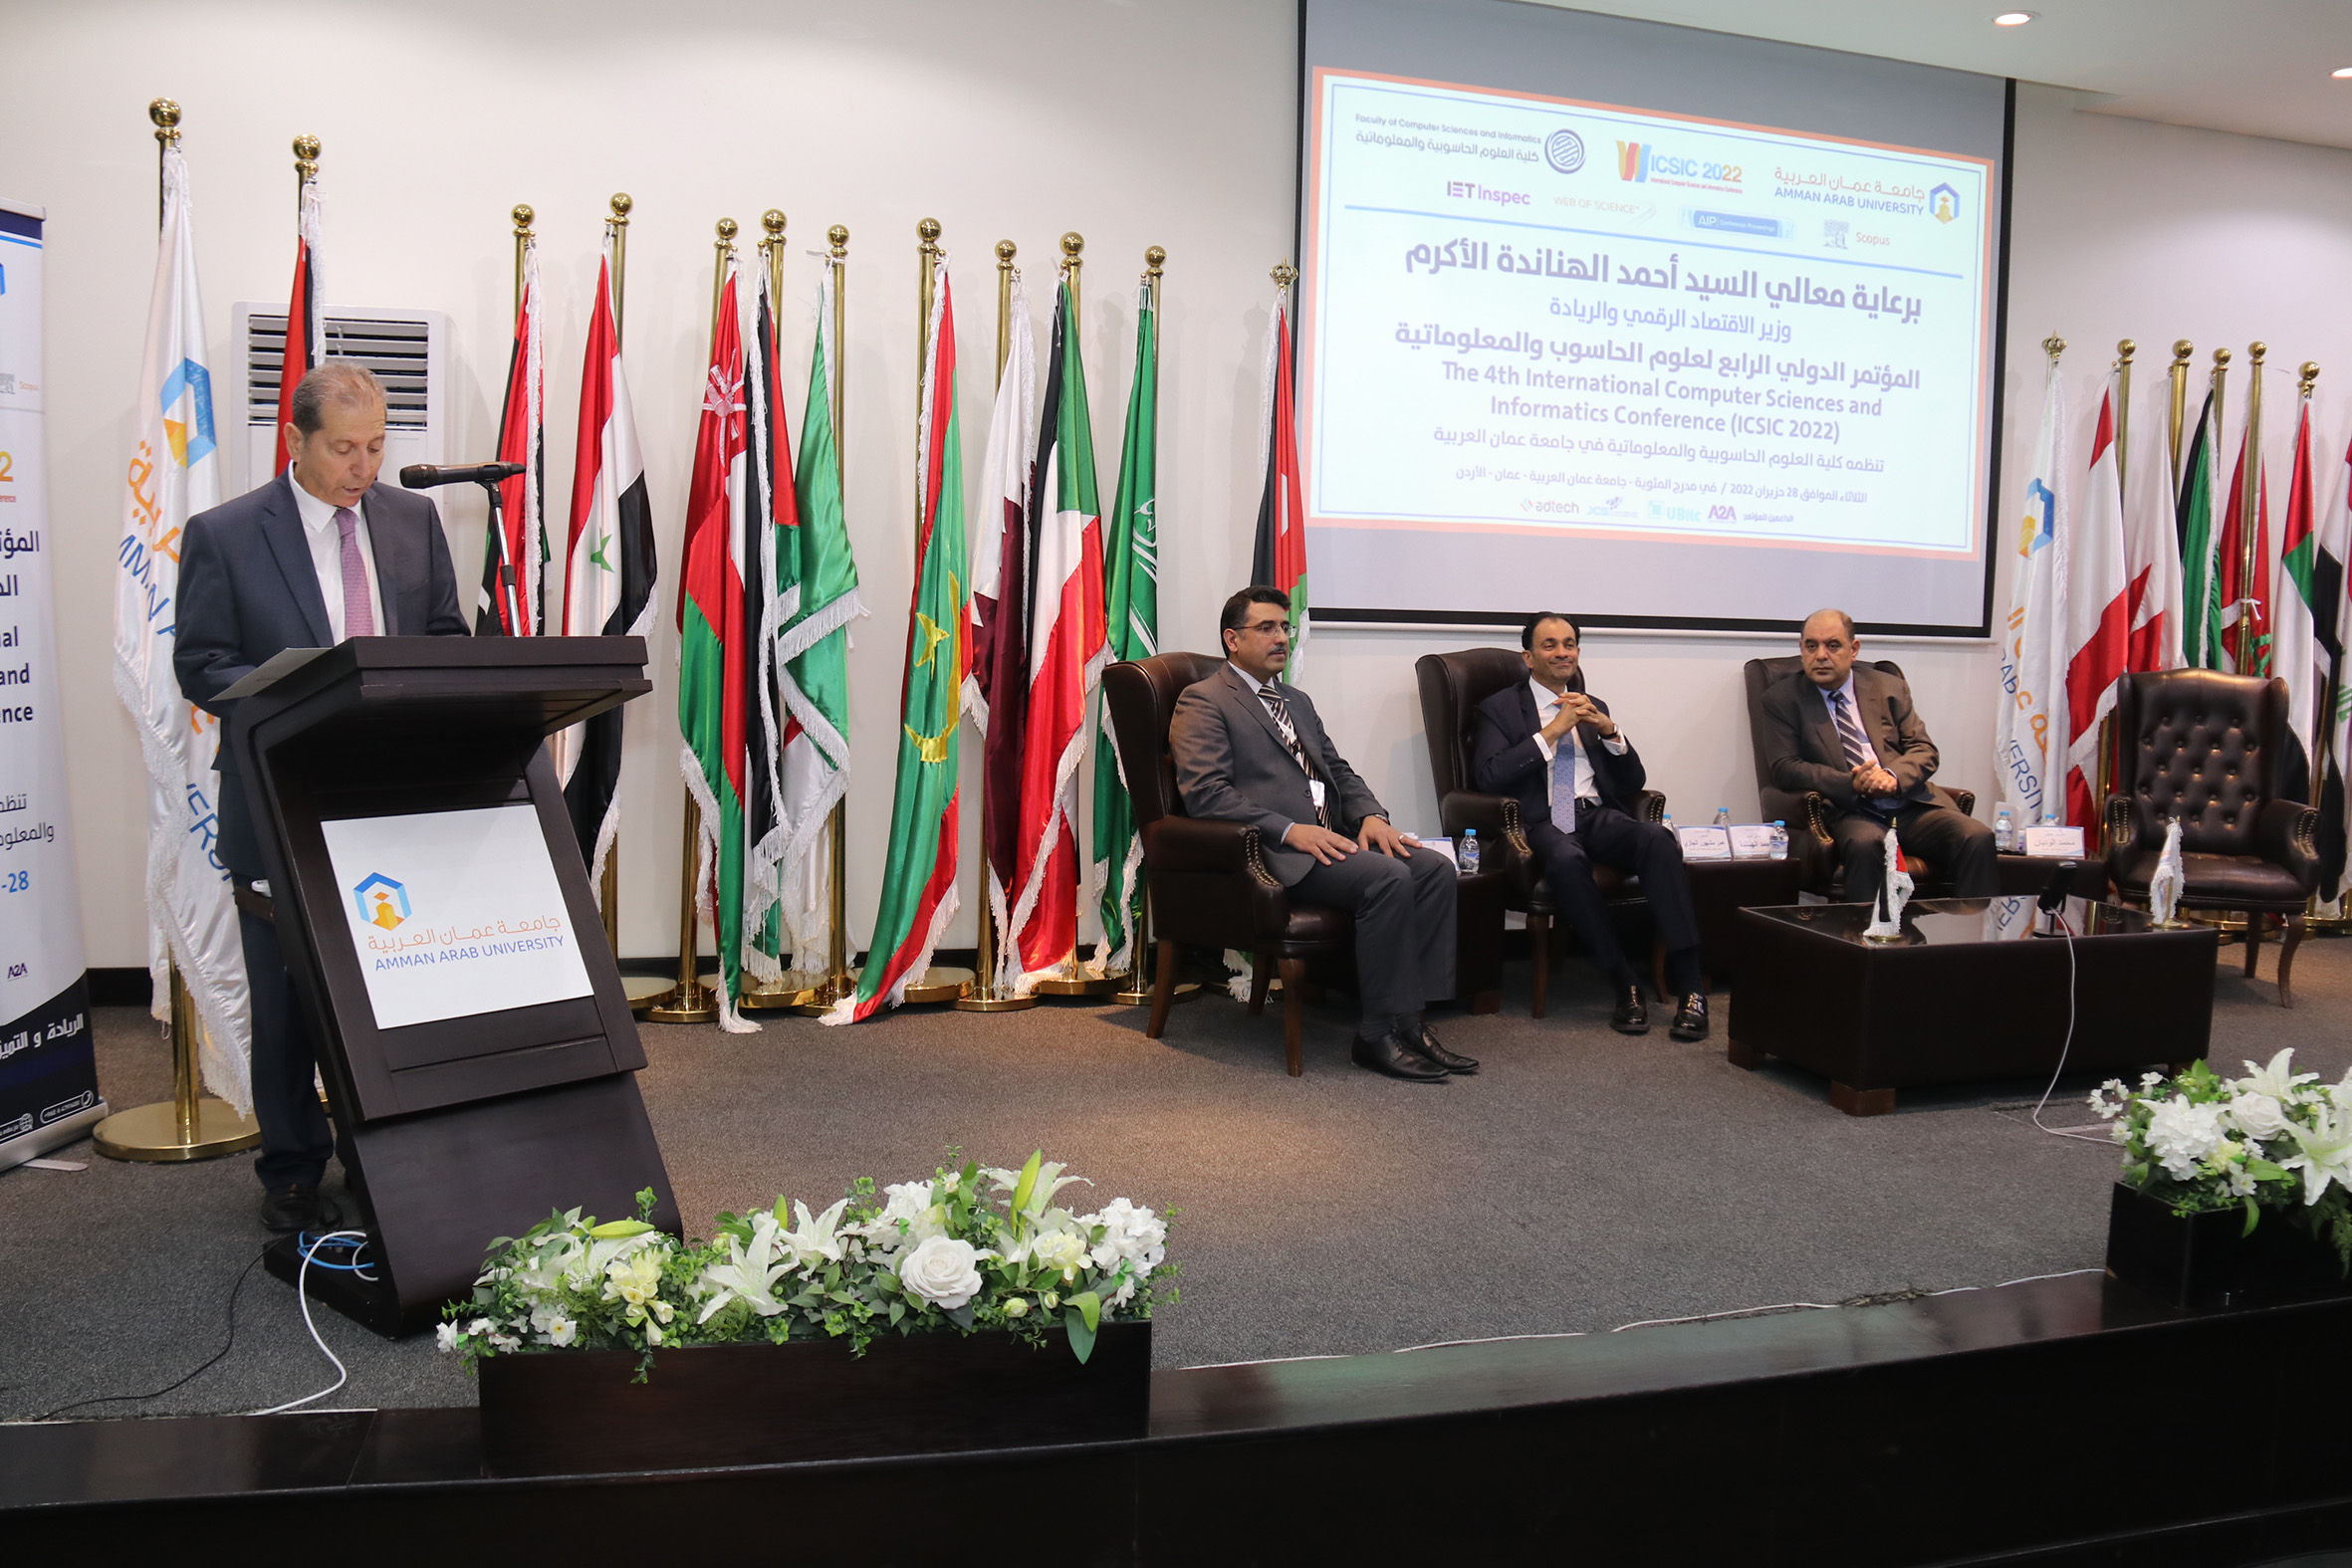 الهناندة يرعى افتتاح فعاليات المؤتمر الدولي الرابع في العلوم الحاسوبية والمعلوماتية في "عمان العربية"8